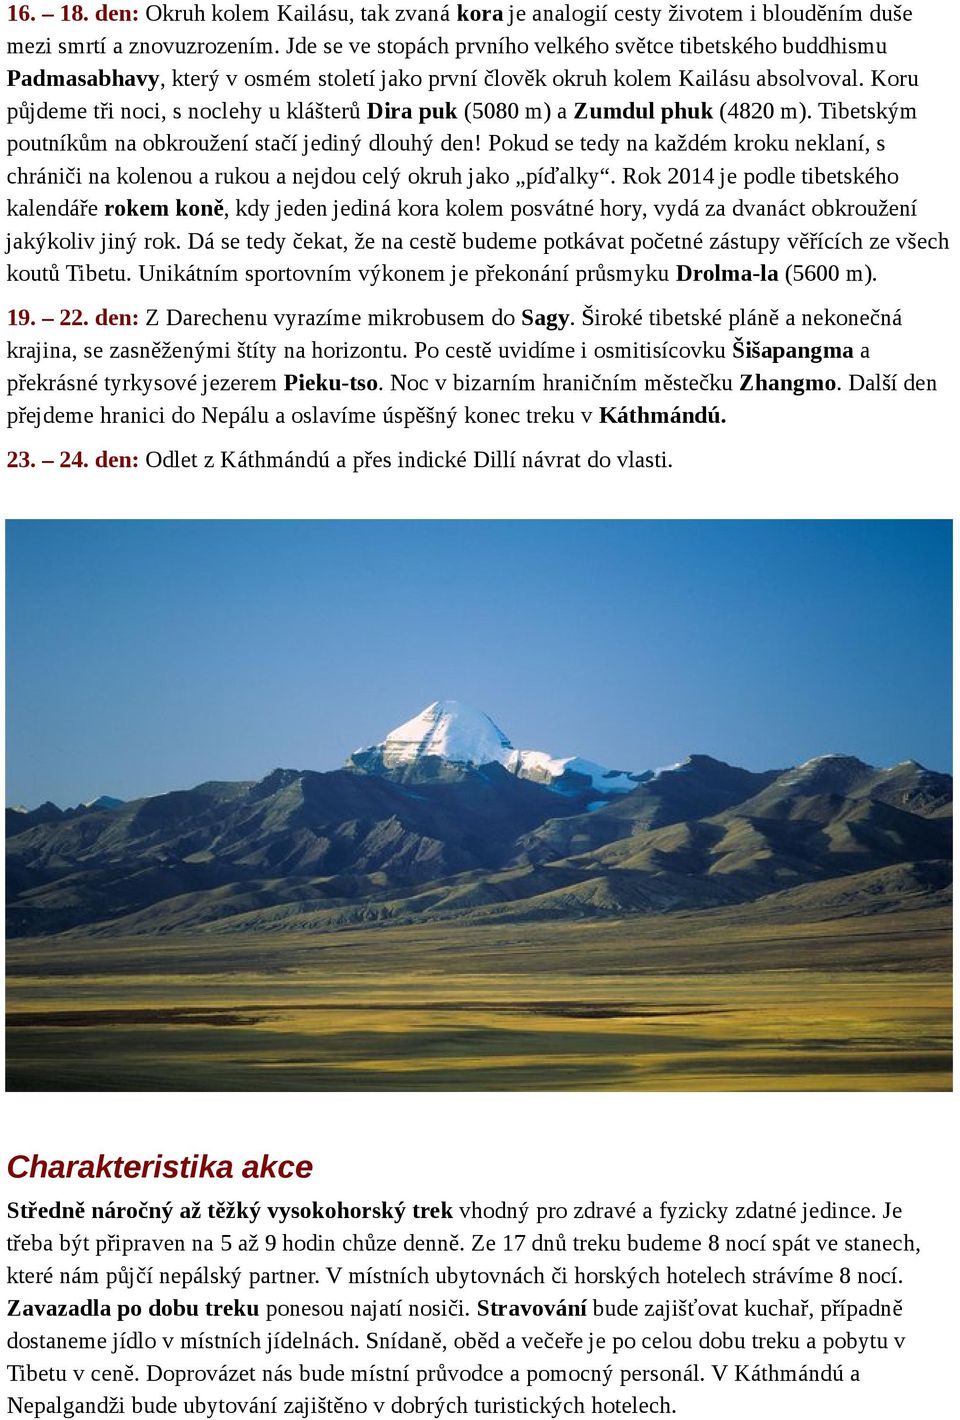 Koru půjdeme tři noci, s noclehy u klášterů Dira puk (5080 m) a Zumdul phuk (4820 m). Tibetským poutníkům na obkroužení stačí jediný dlouhý den!